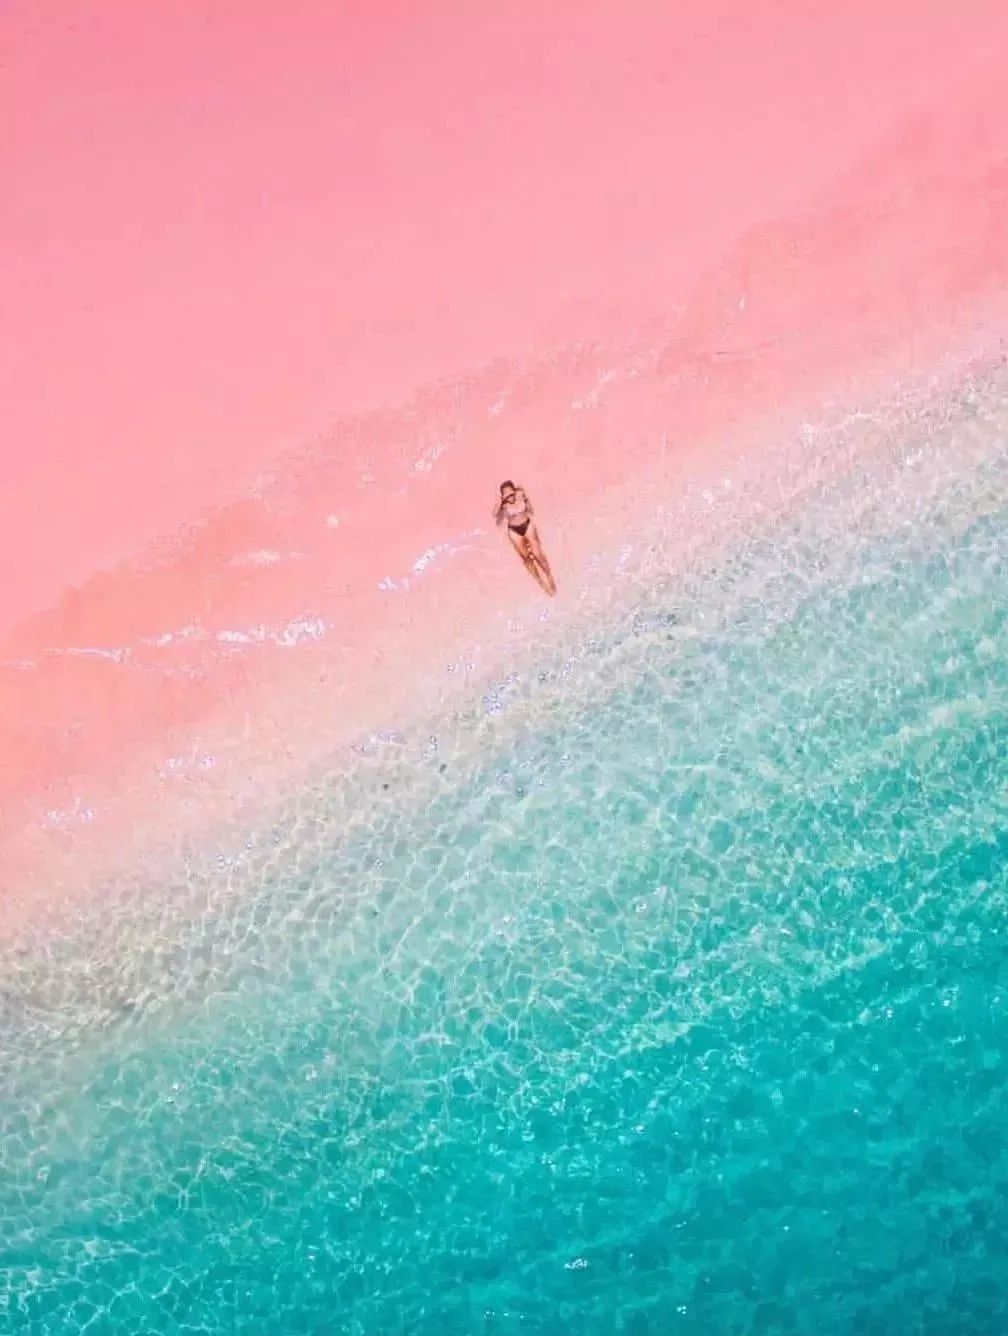 粉色沙滩图而且还免签哦从巴厘岛直飞仅1h它就是——印尼的科莫多岛